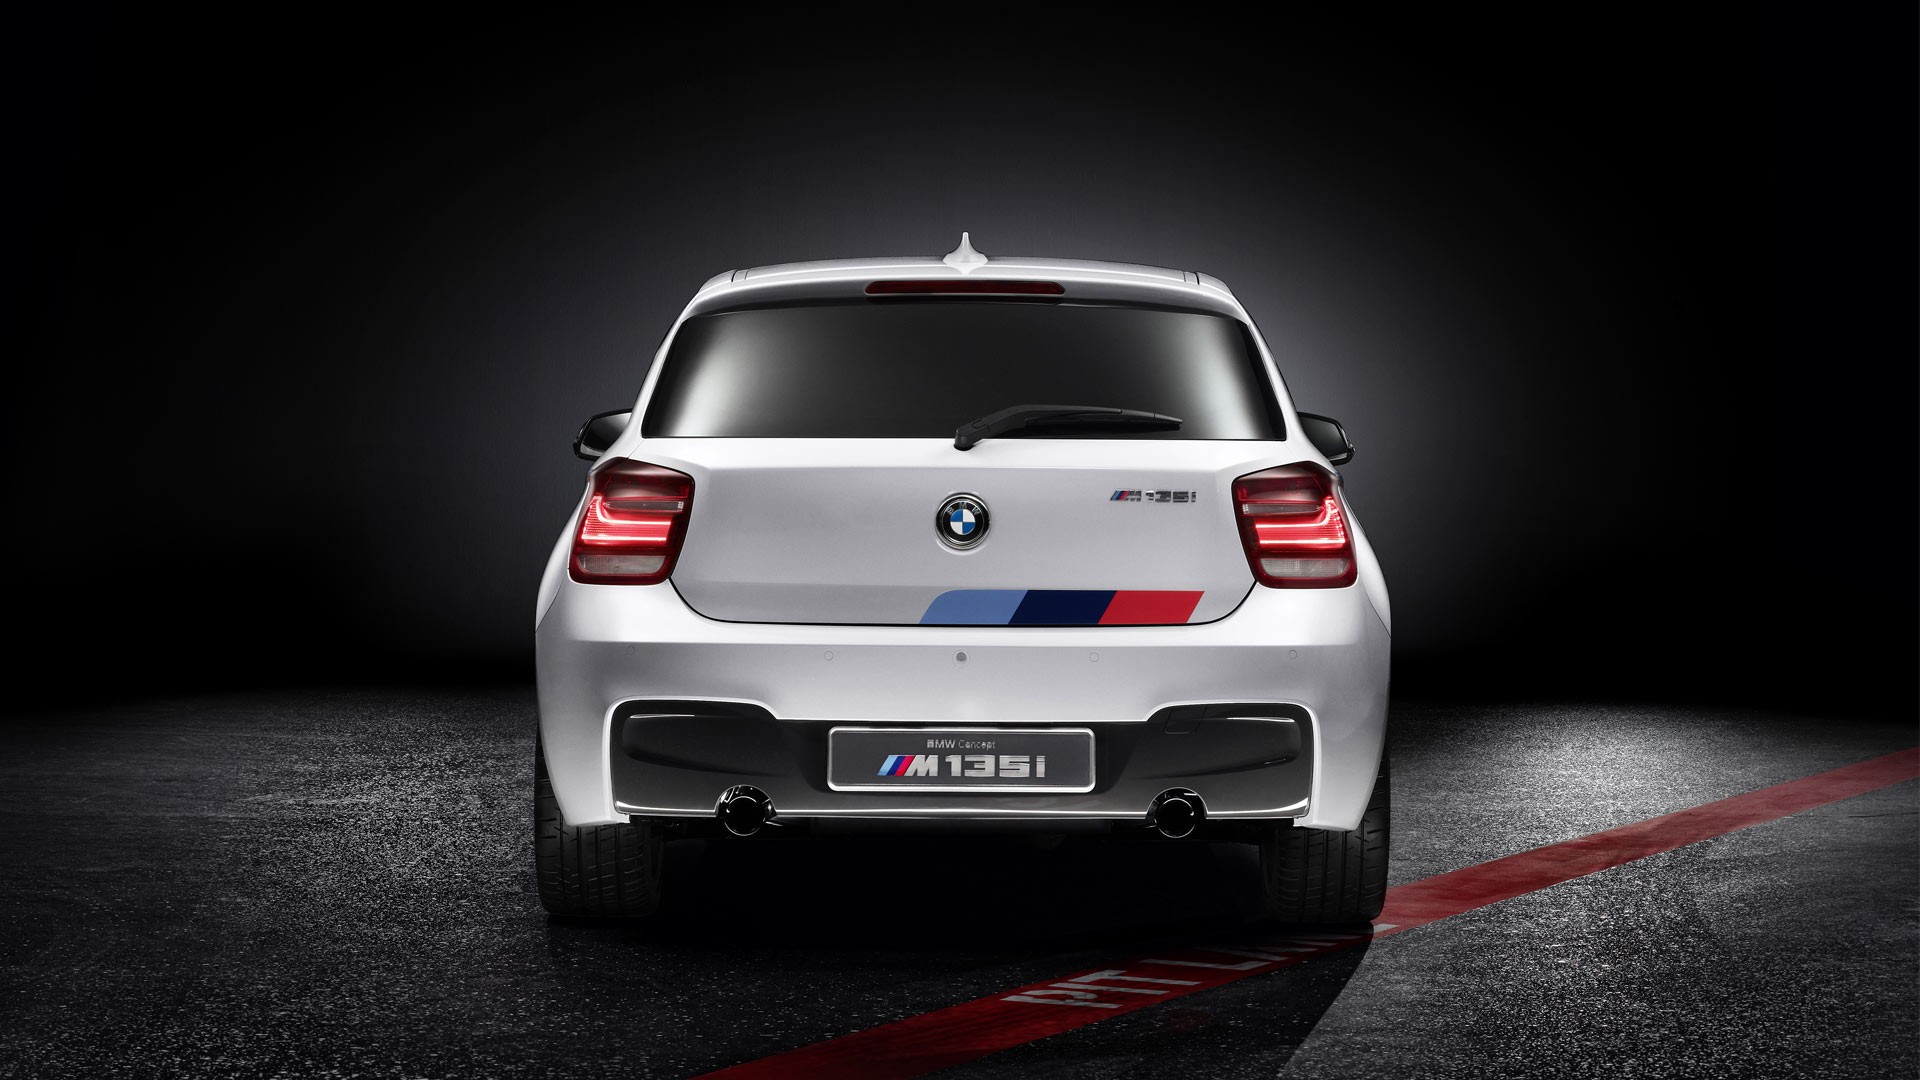 автомобили, BMW Concept - обои на рабочий стол